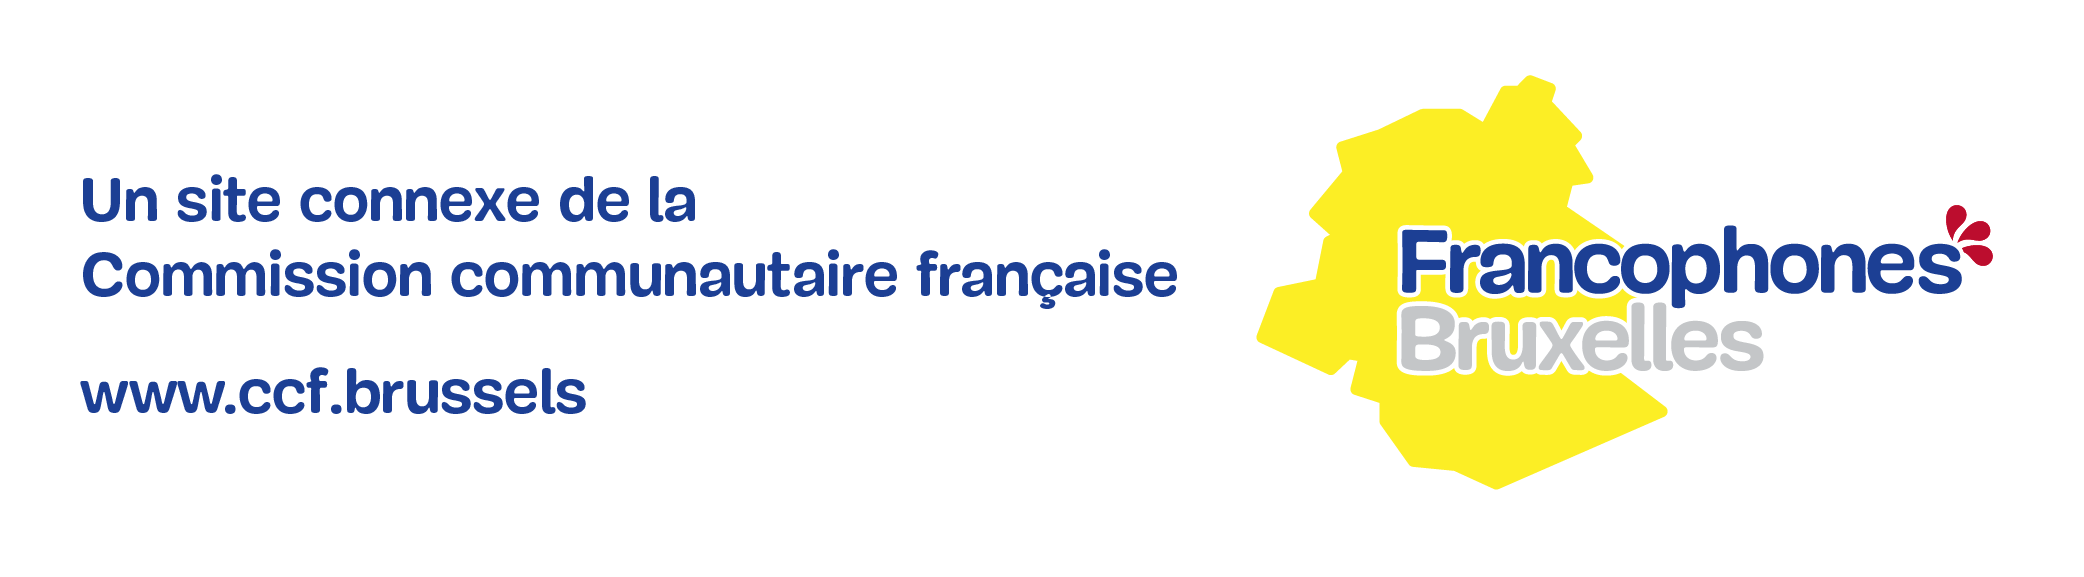 Un site connexe de la Commission communautaire française COCOF